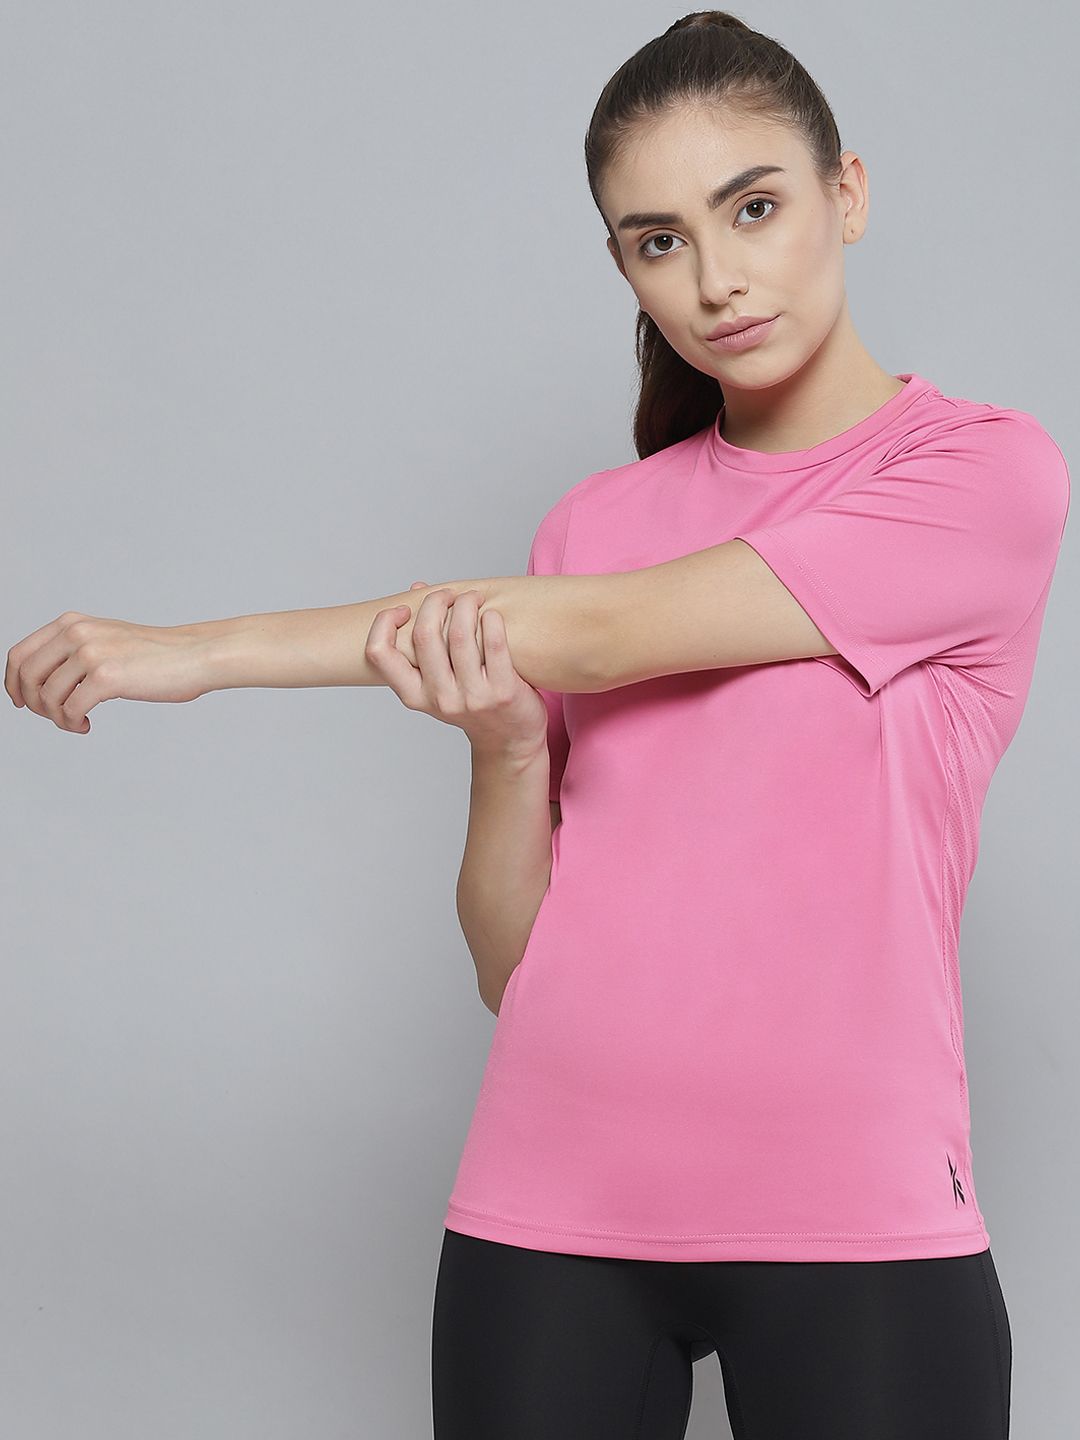 Reebok Women Pink WOR Speedwick Training or Gym T-shirt Price in India